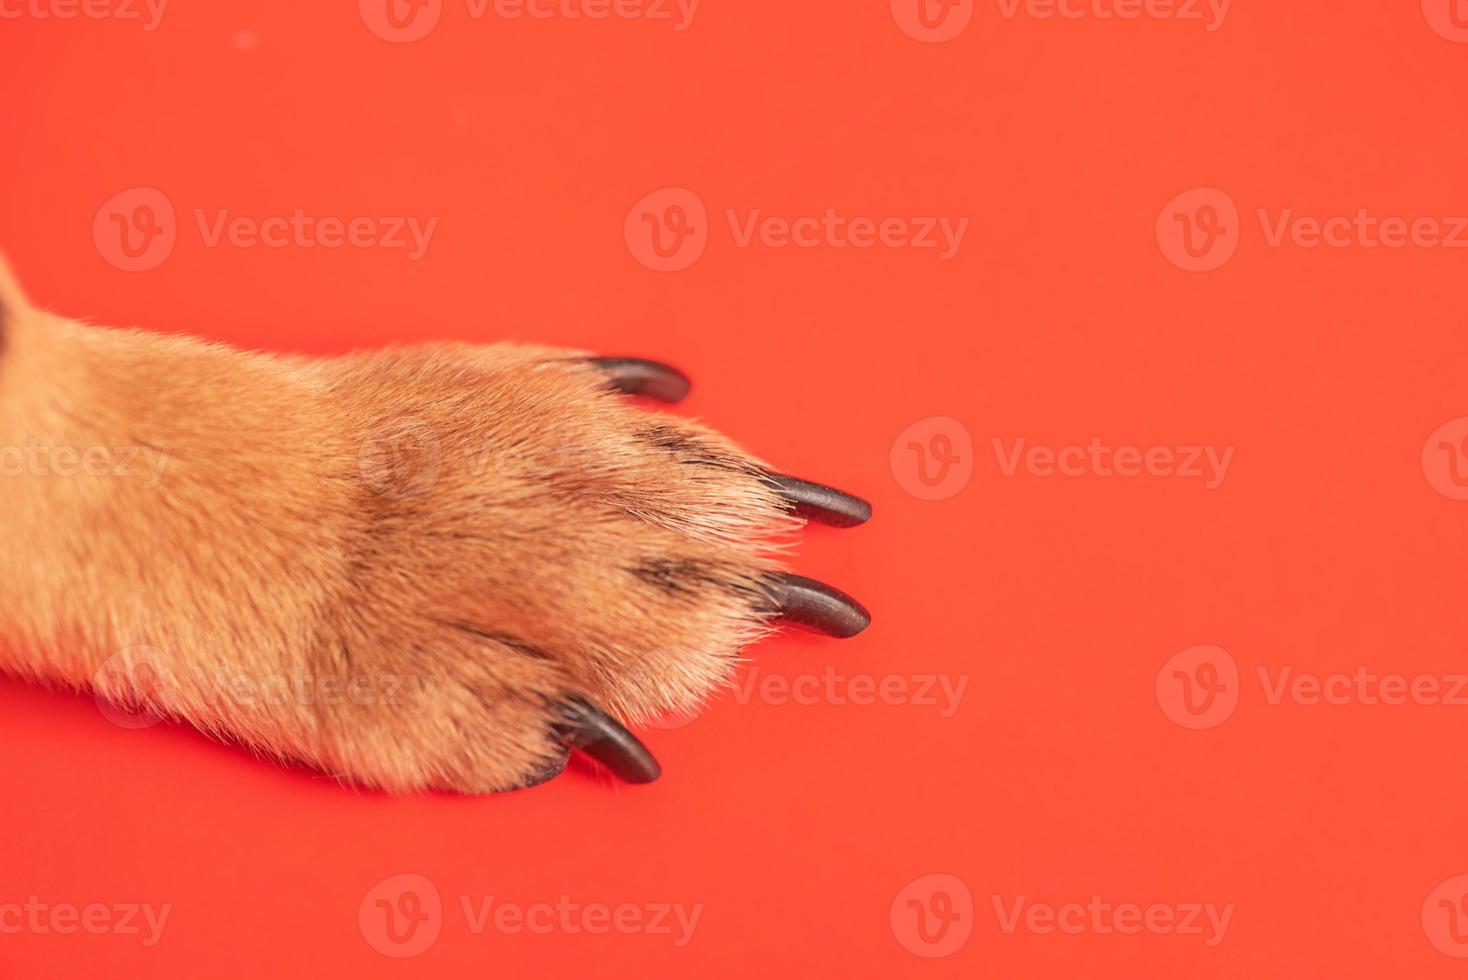 patte brune d'un petit chien sur fond rouge. photo macro de pattes.